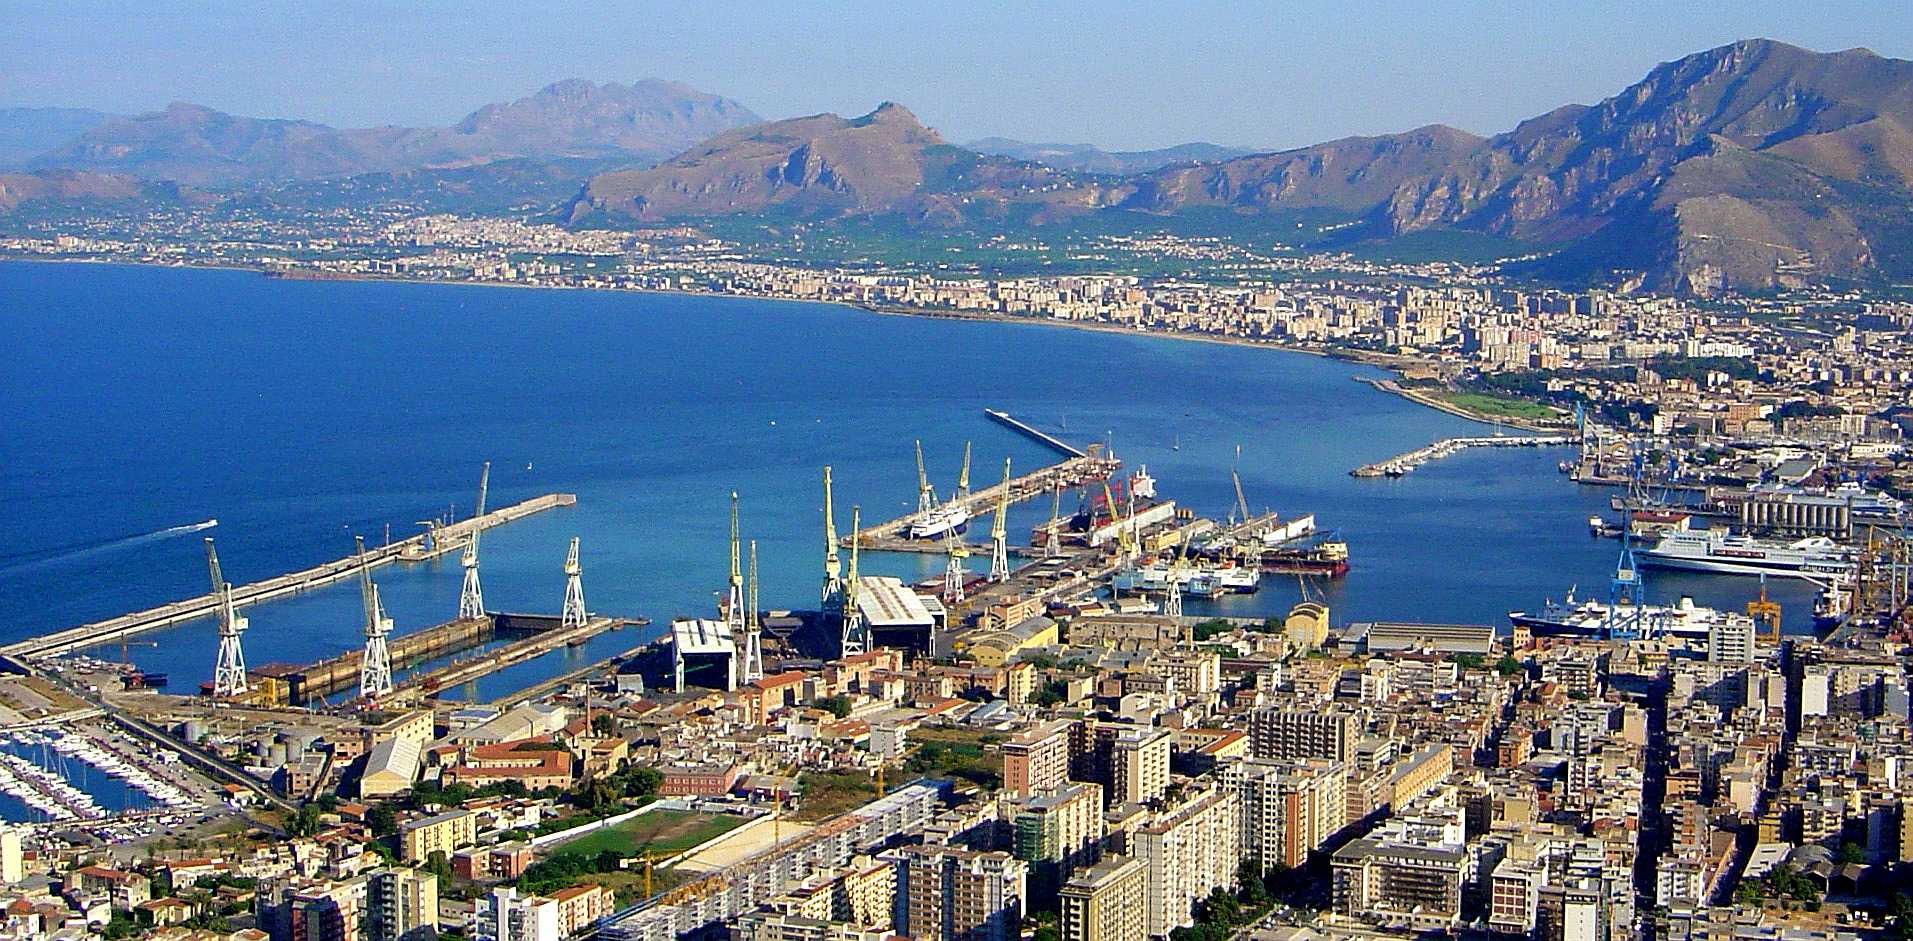 Palermo, Sicily, Jules Verne, Around the world in 80 days hydrogen challenge